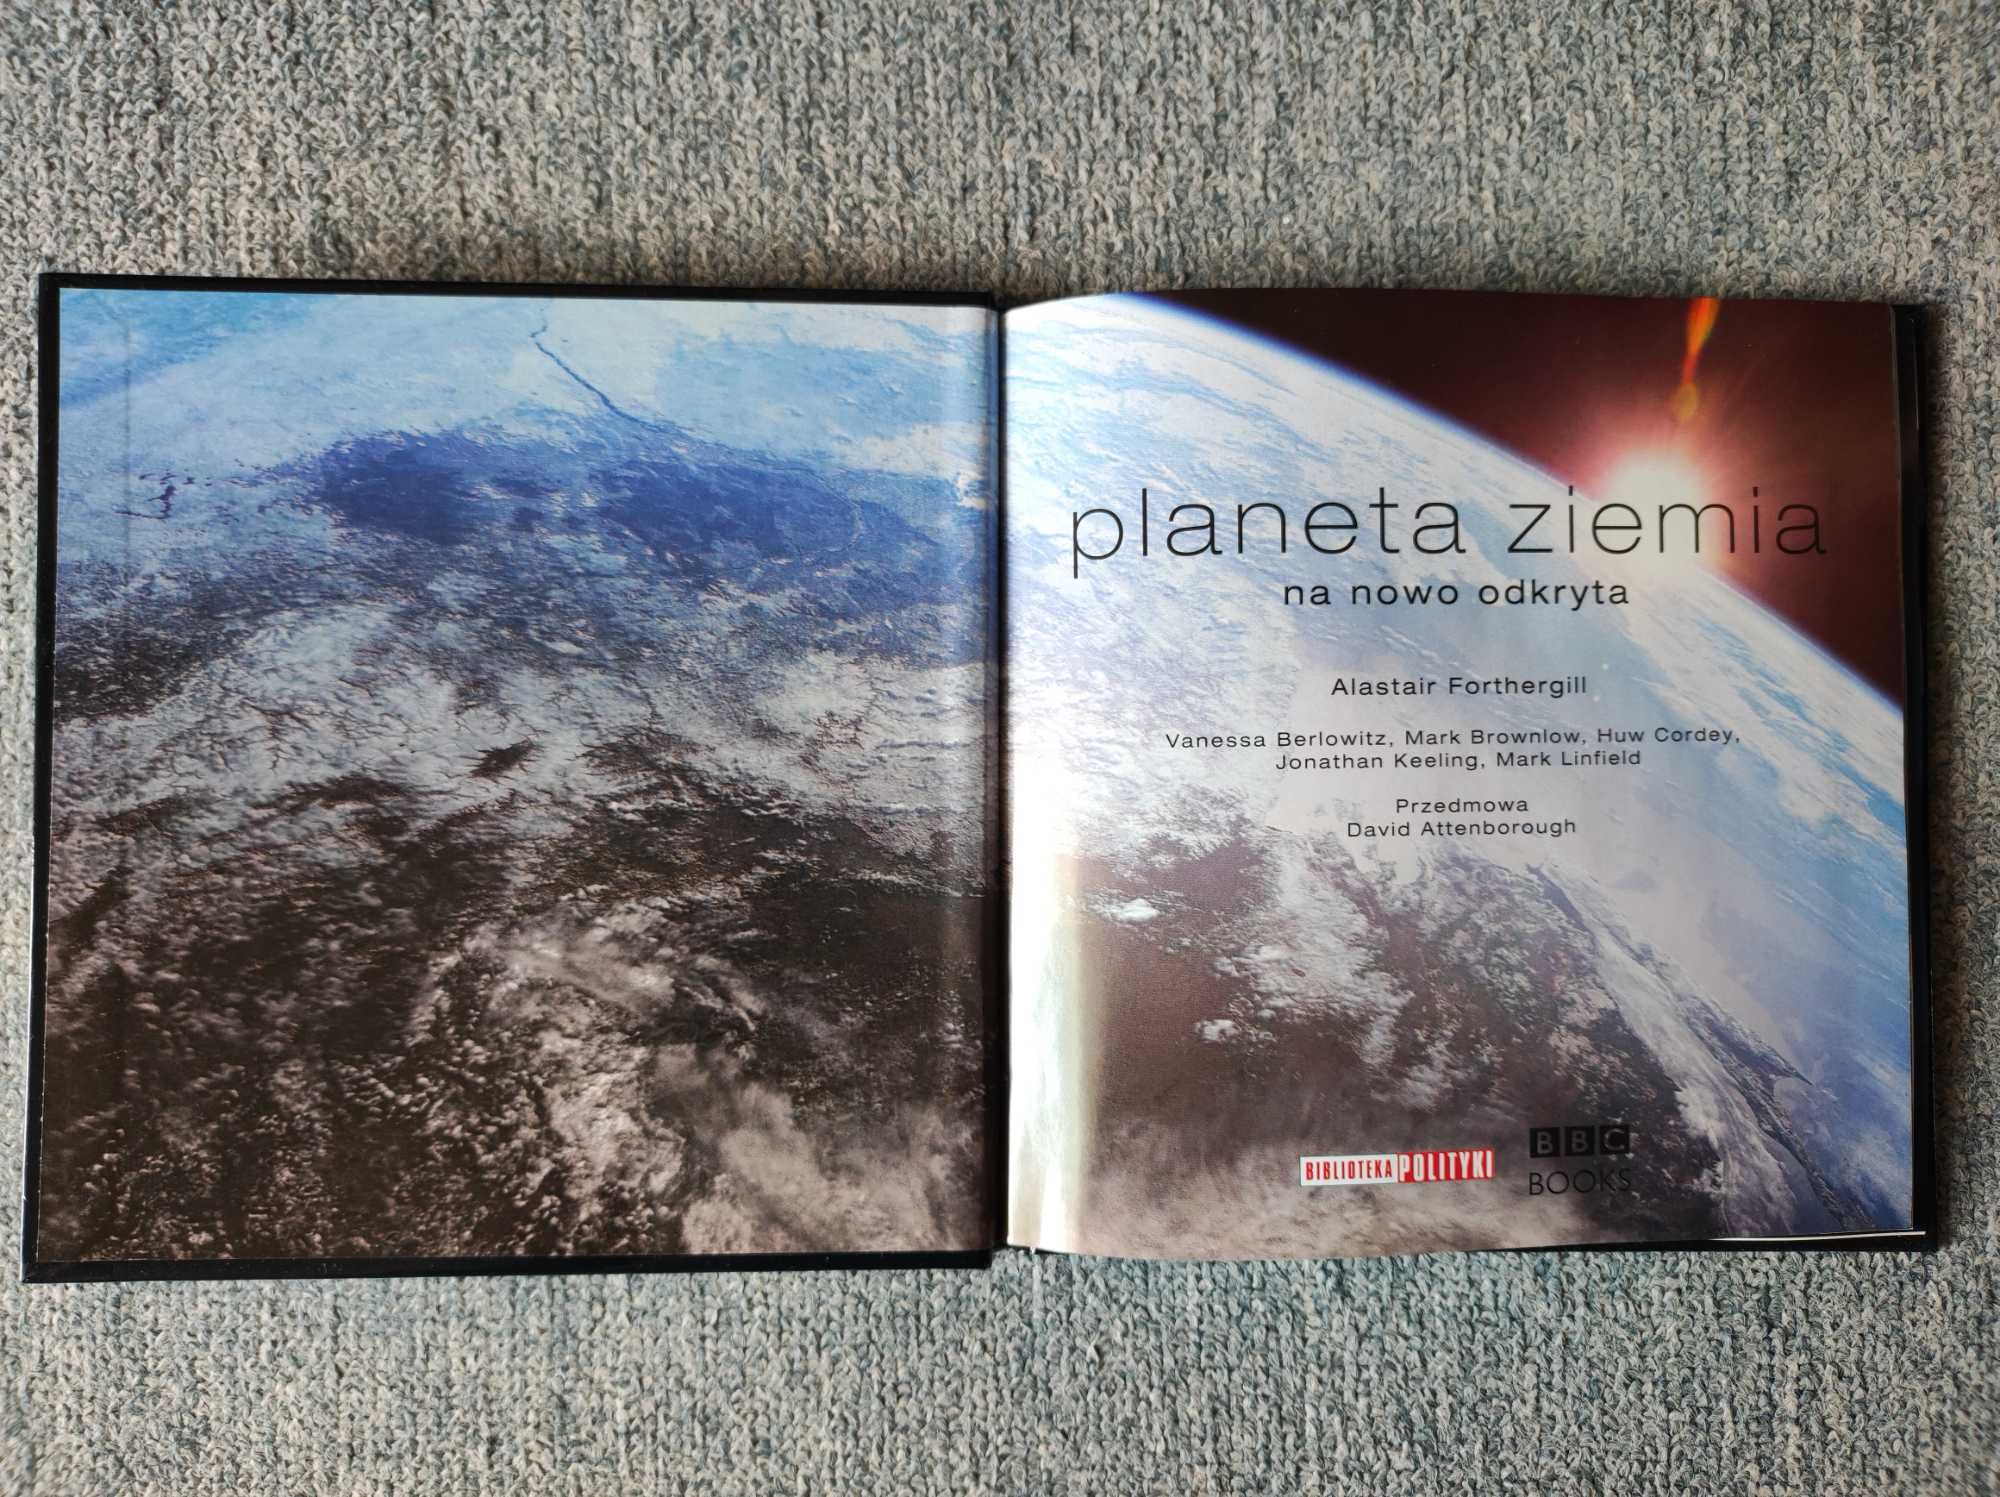 DVD Planeta Ziemia - odc. 1 "Od bieguna do bieguna", BBC